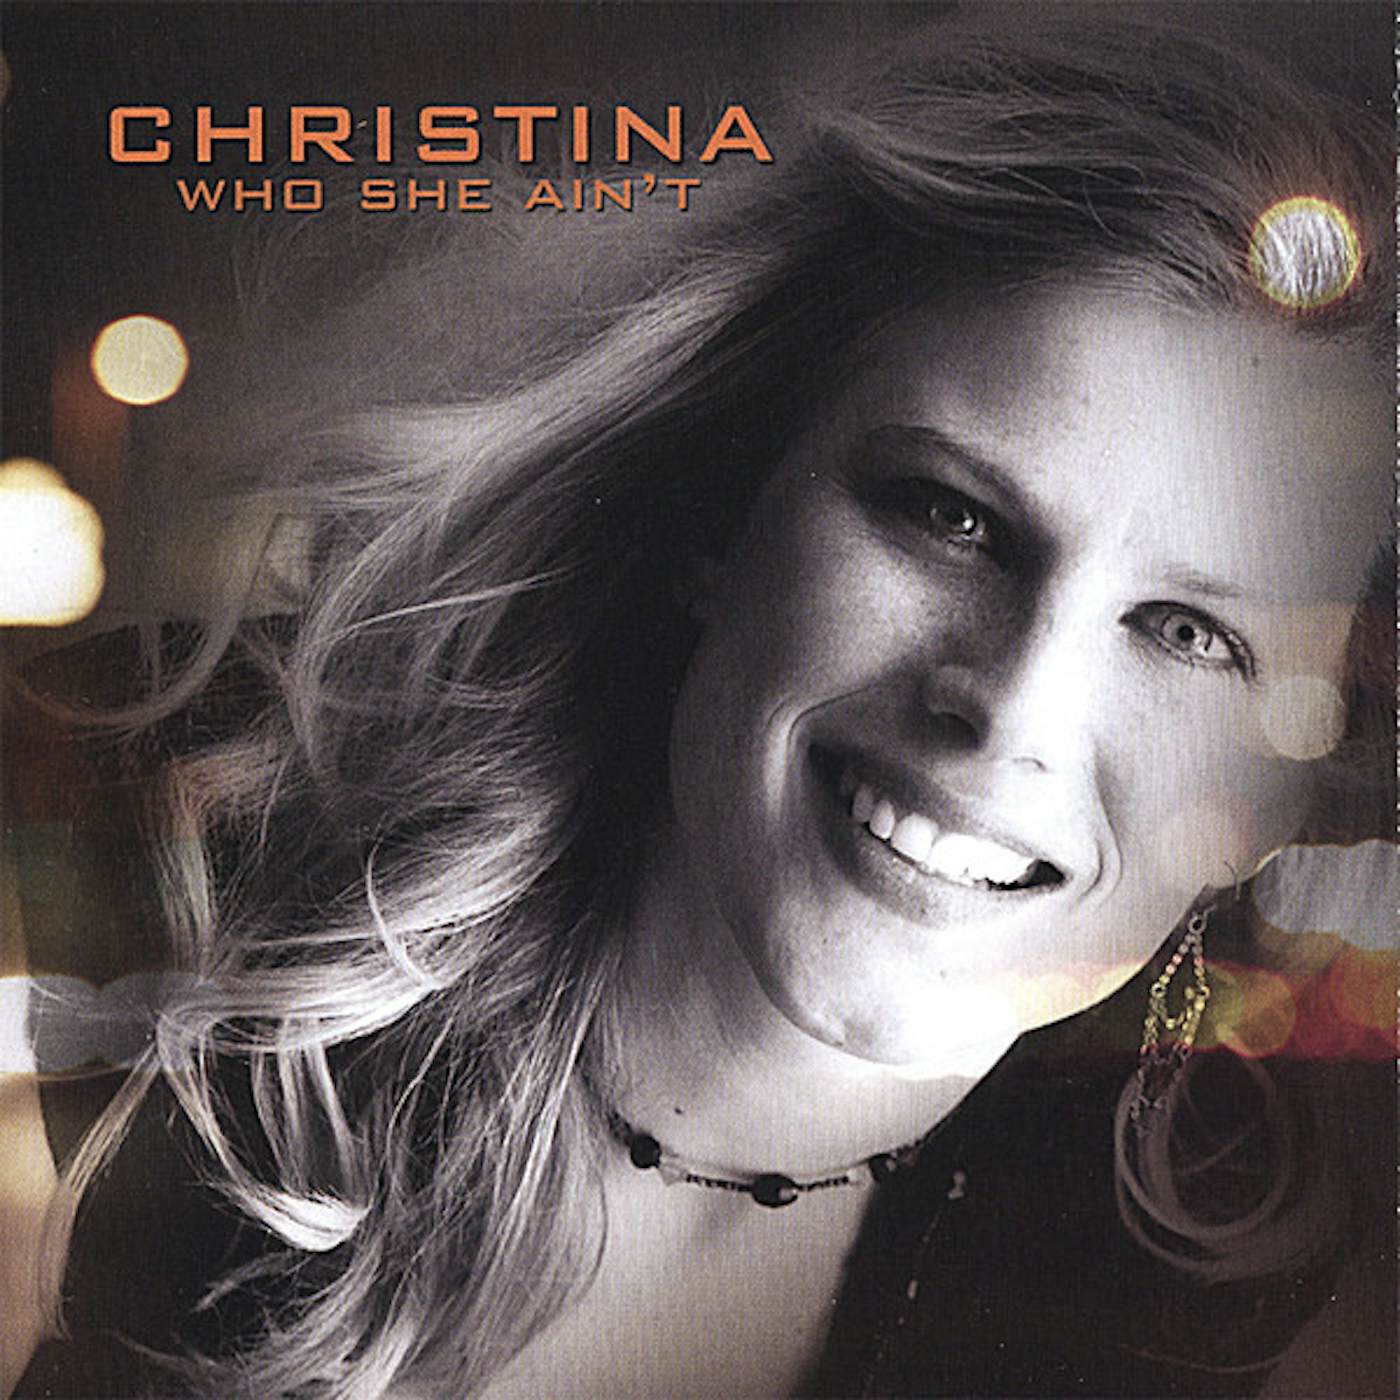 Christina WHO SHE AIN'T CD